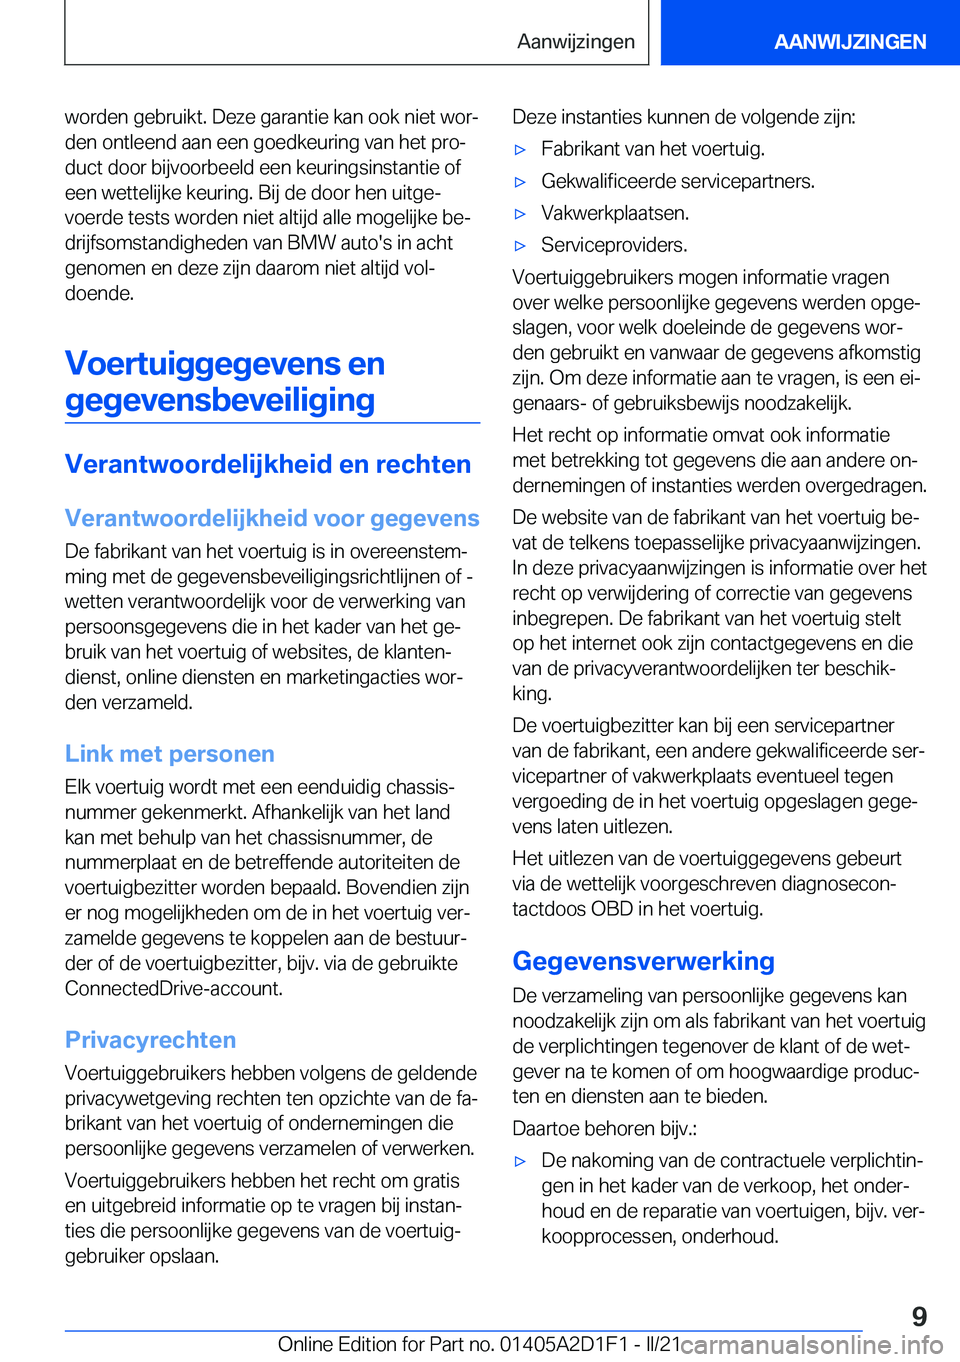 BMW X6 M 2021  Instructieboekjes (in Dutch) �w�o�r�d�e�n��g�e�b�r�u�i�k�t�.��D�e�z�e��g�a�r�a�n�t�i�e��k�a�n��o�o�k��n�i�e�t��w�o�rj
�d�e�n��o�n�t�l�e�e�n�d��a�a�n��e�e�n��g�o�e�d�k�e�u�r�i�n�g��v�a�n��h�e�t��p�r�oj
�d�u�c�t��d